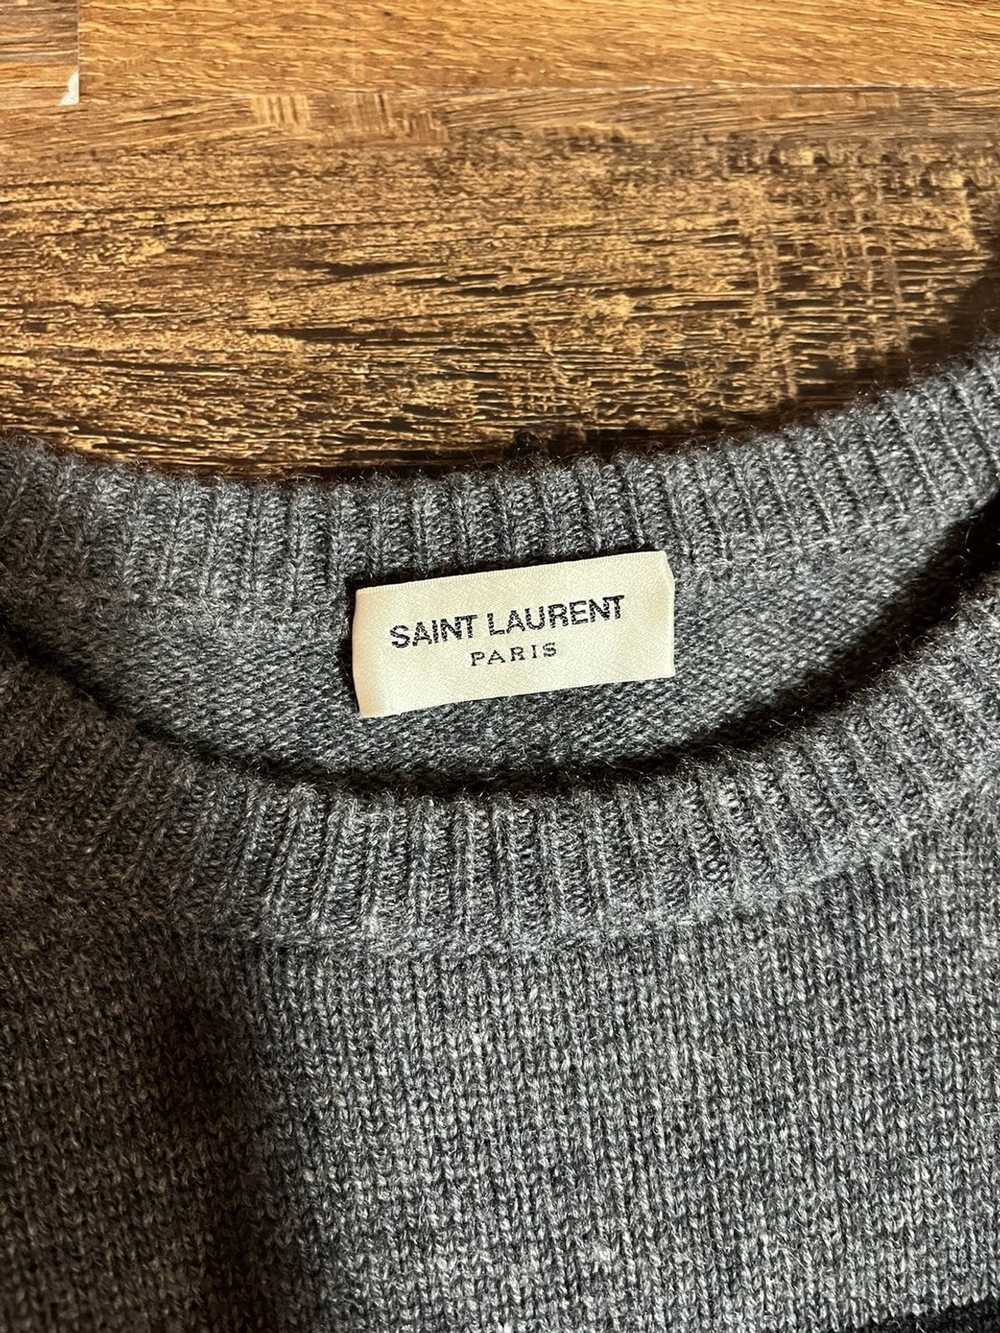 Yves Saint Laurent SAINT LAURENT 100% CASHMERE SA… - image 2